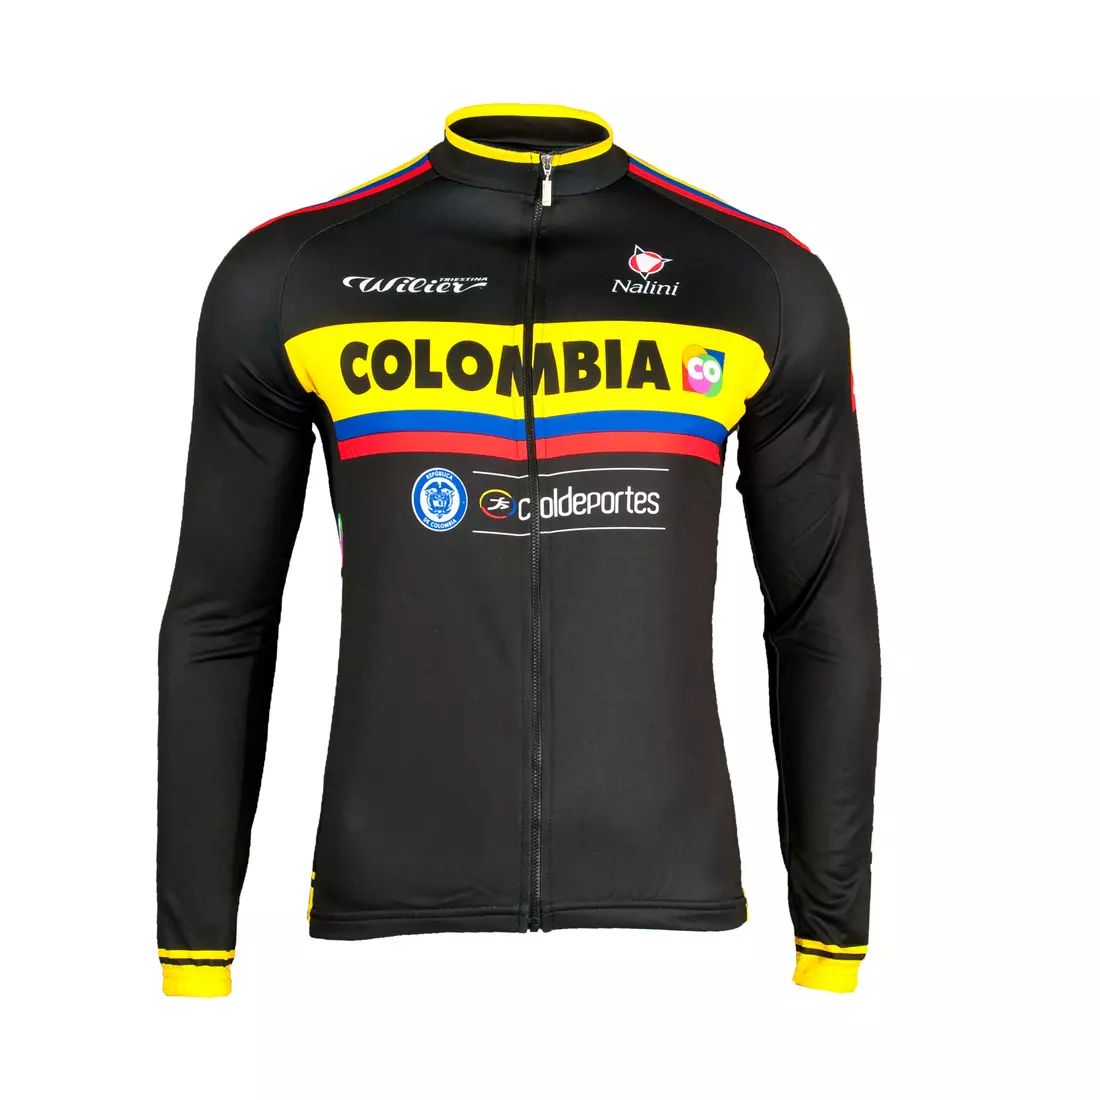 Cyklistická mikina COLOMBIA 2015